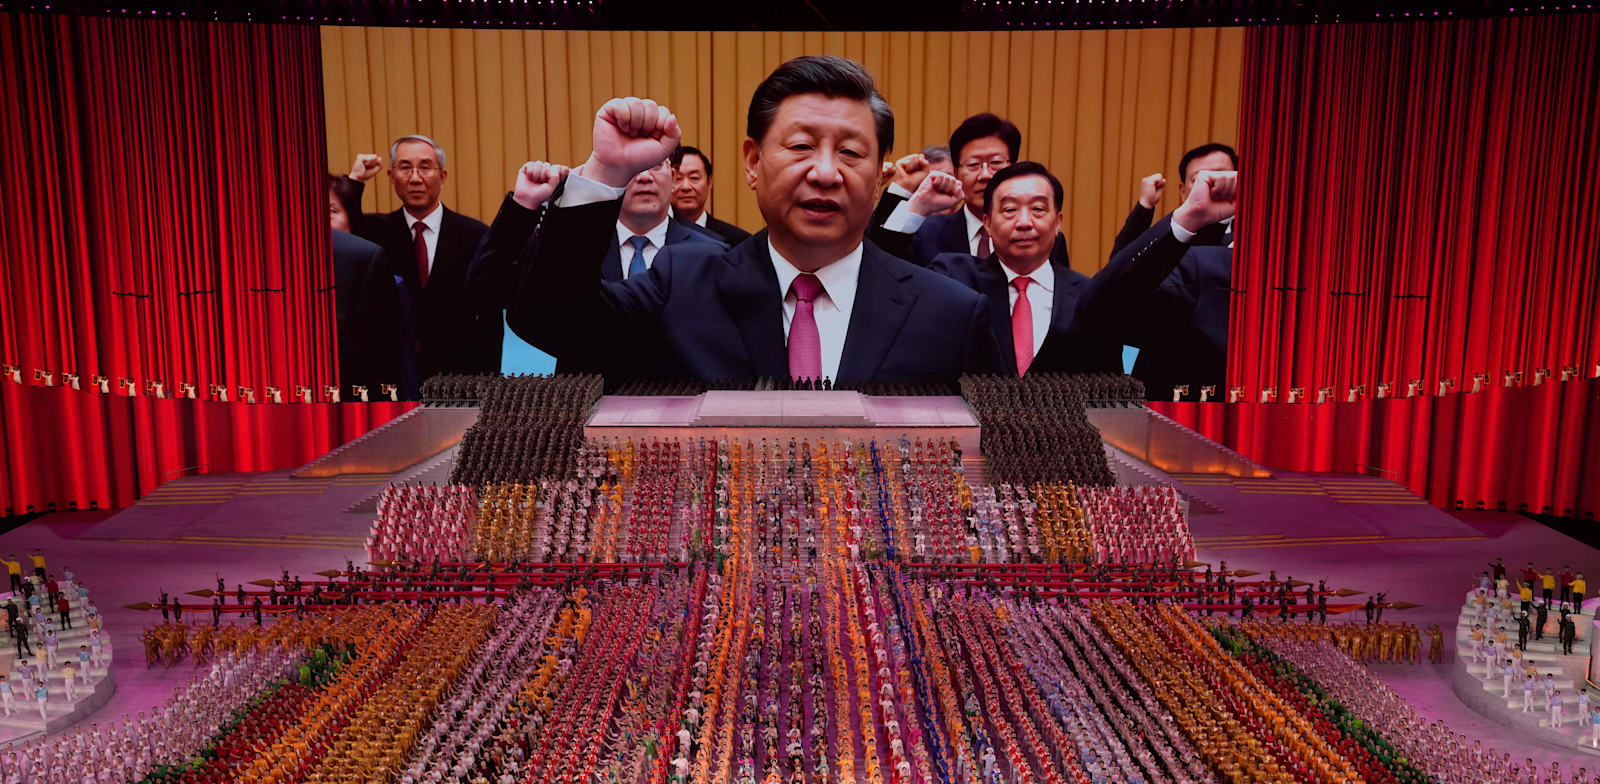 נשיא סין, שי ג'ינפינג, בחגיגות 100 שנה להקמת המפלגה הקומוניסטית הסינית, יוני / צילום: Associated Press, Ng Han Guan